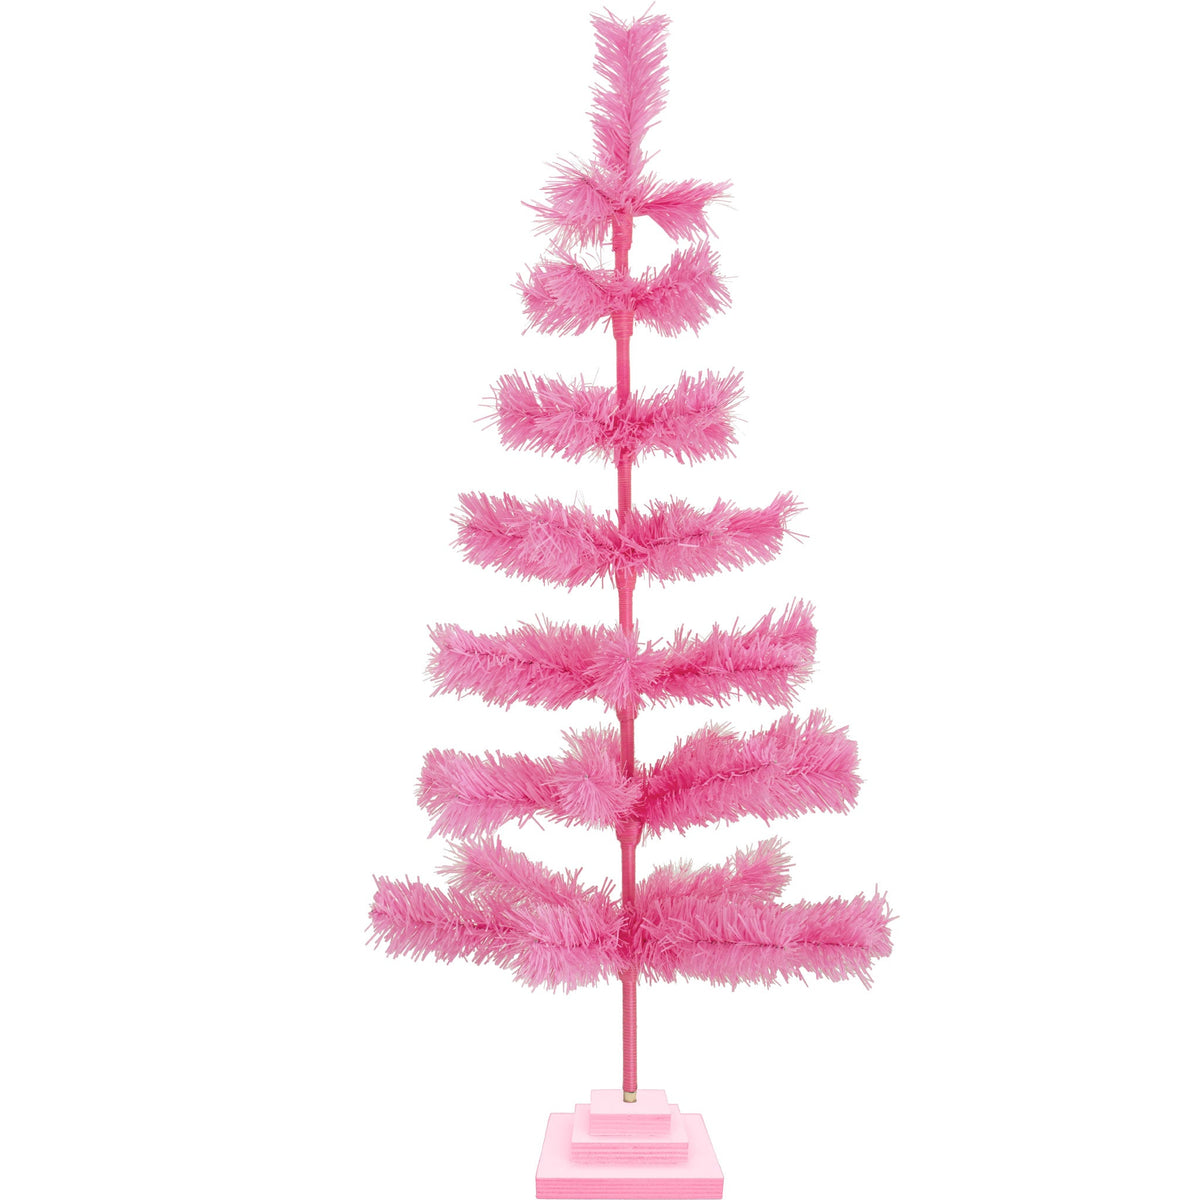 3 Foot Tall Pink Tinsel Christmas Trees on sale at Leedisplay.com.